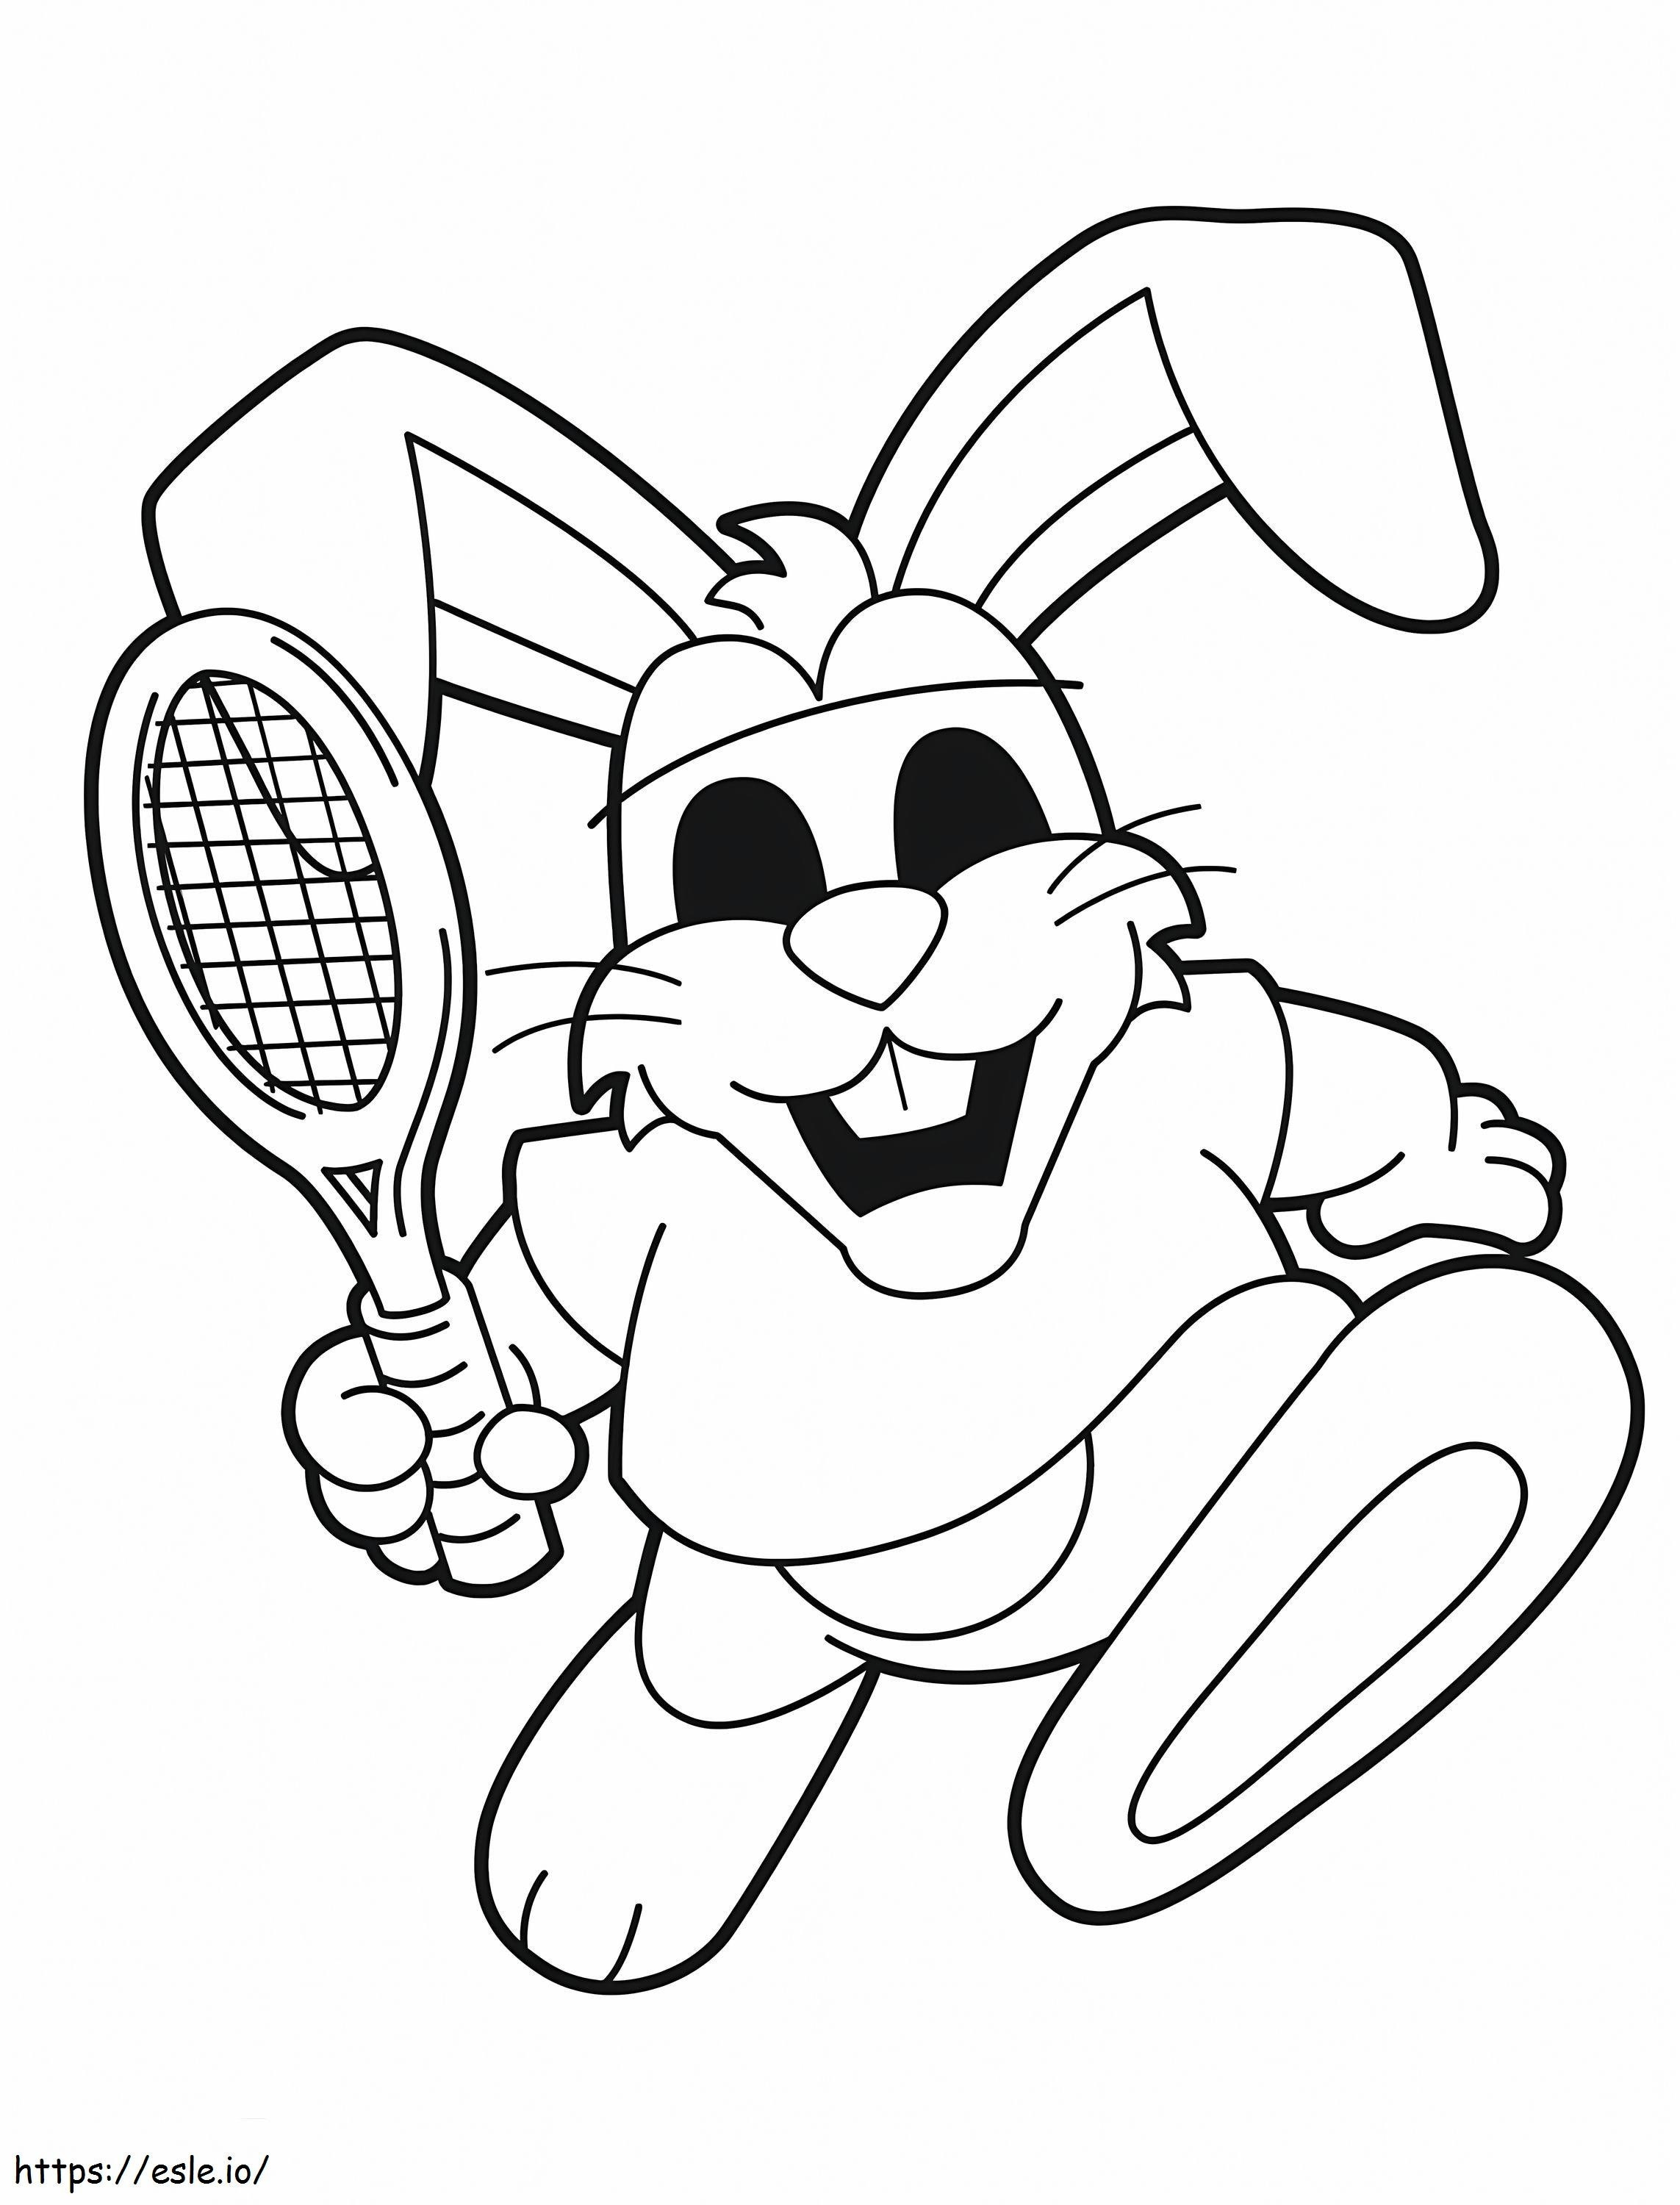 Kaninchen spielt Tennis ausmalbilder